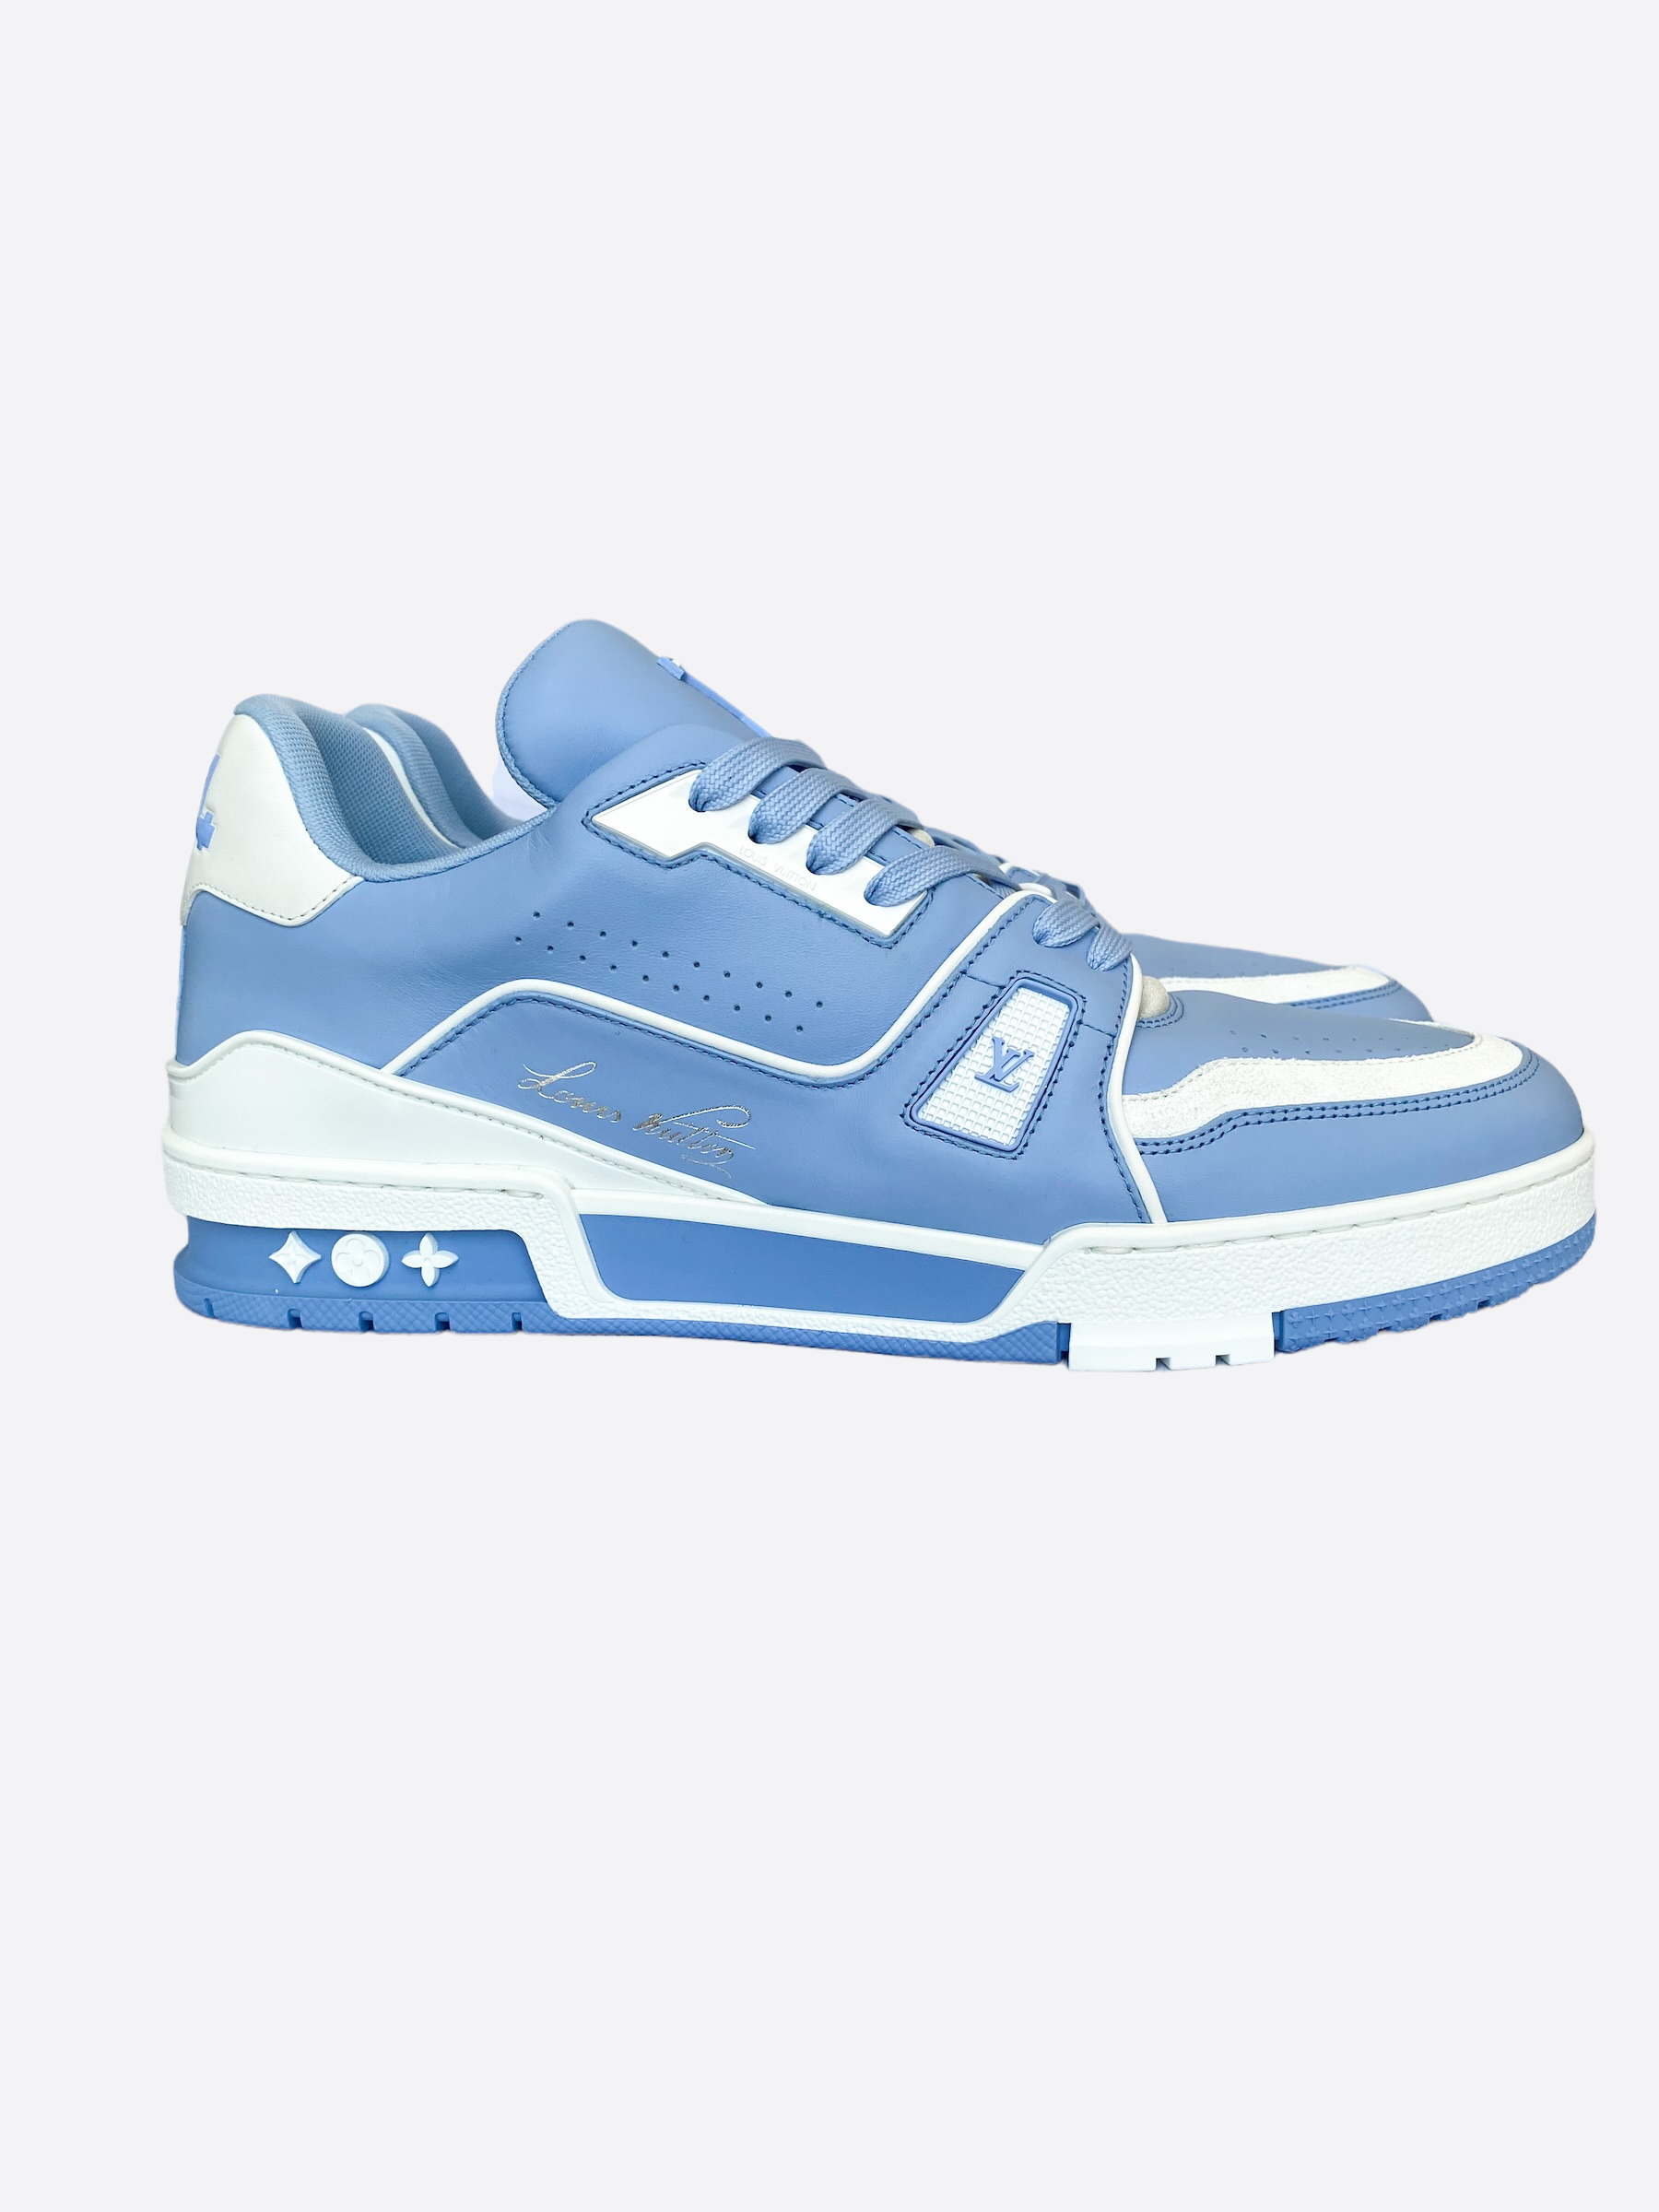 LOUIS VUITTON LV Trainer Sneaker Blue. Size 8